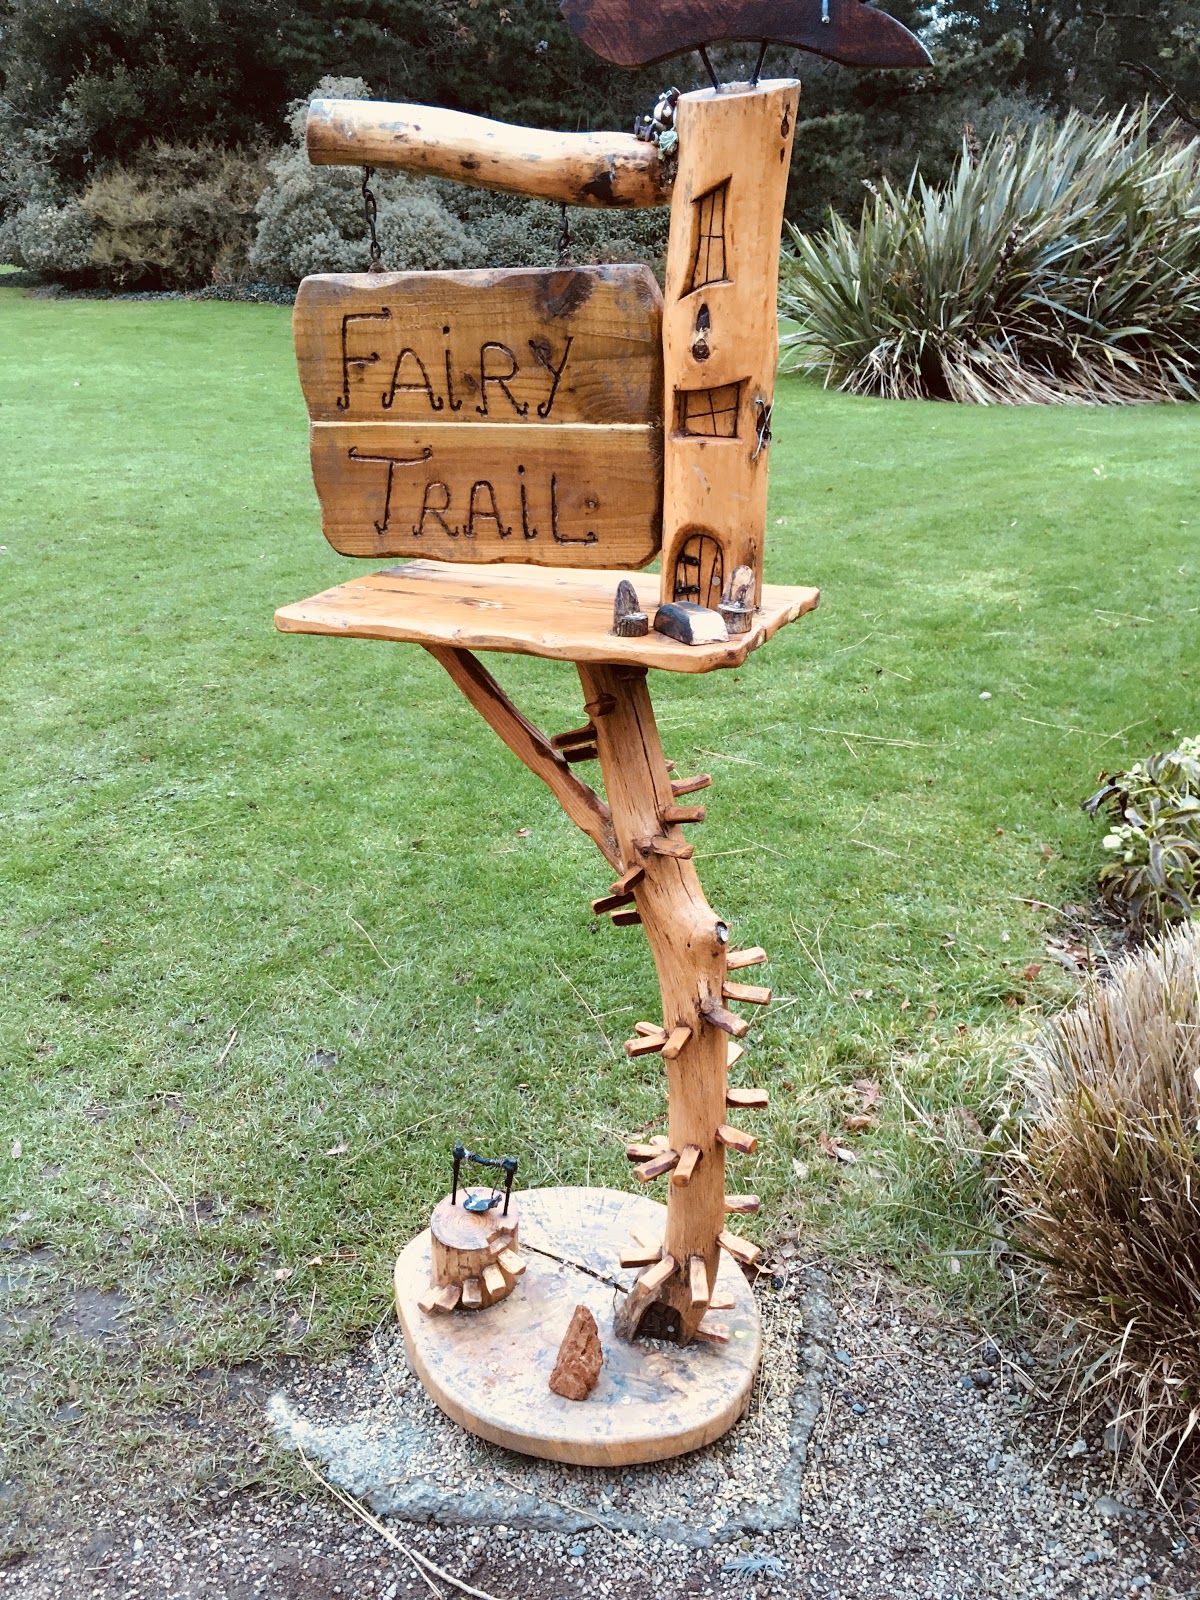 fairy trail